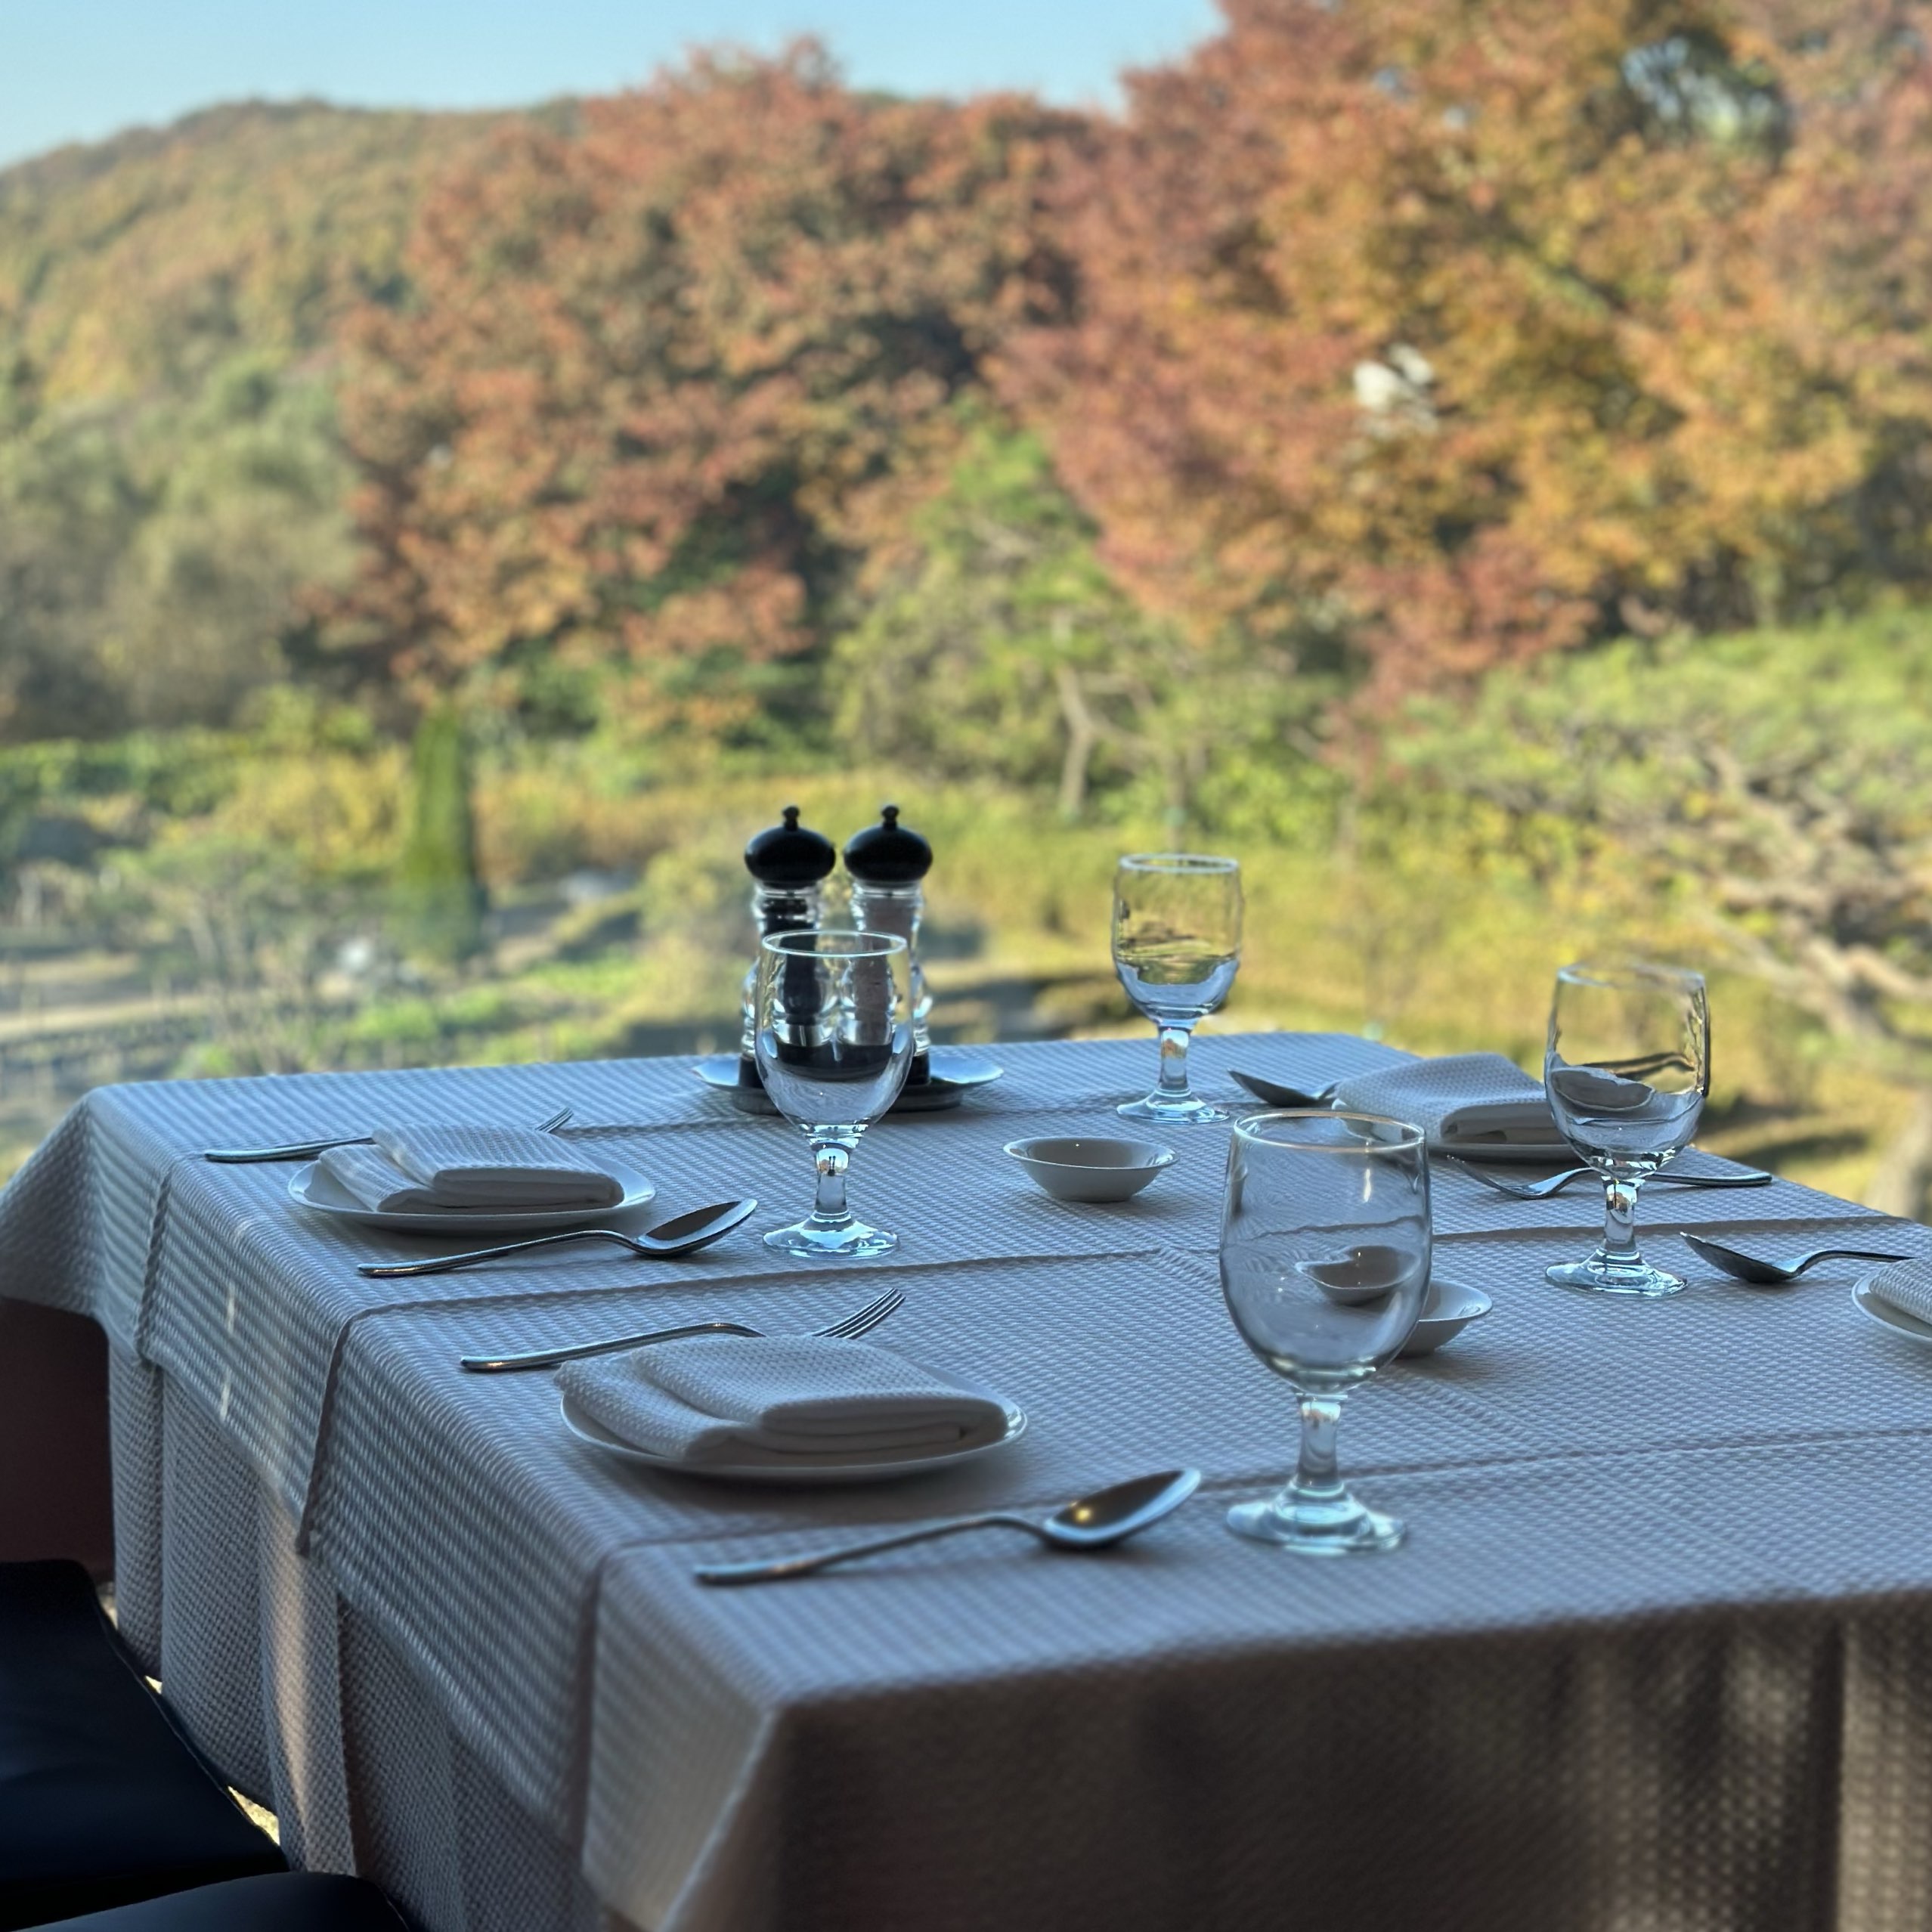 🌟首尔郊区美食之旅!白云湖旁的宁静氛围!去意大利餐厅!🌟